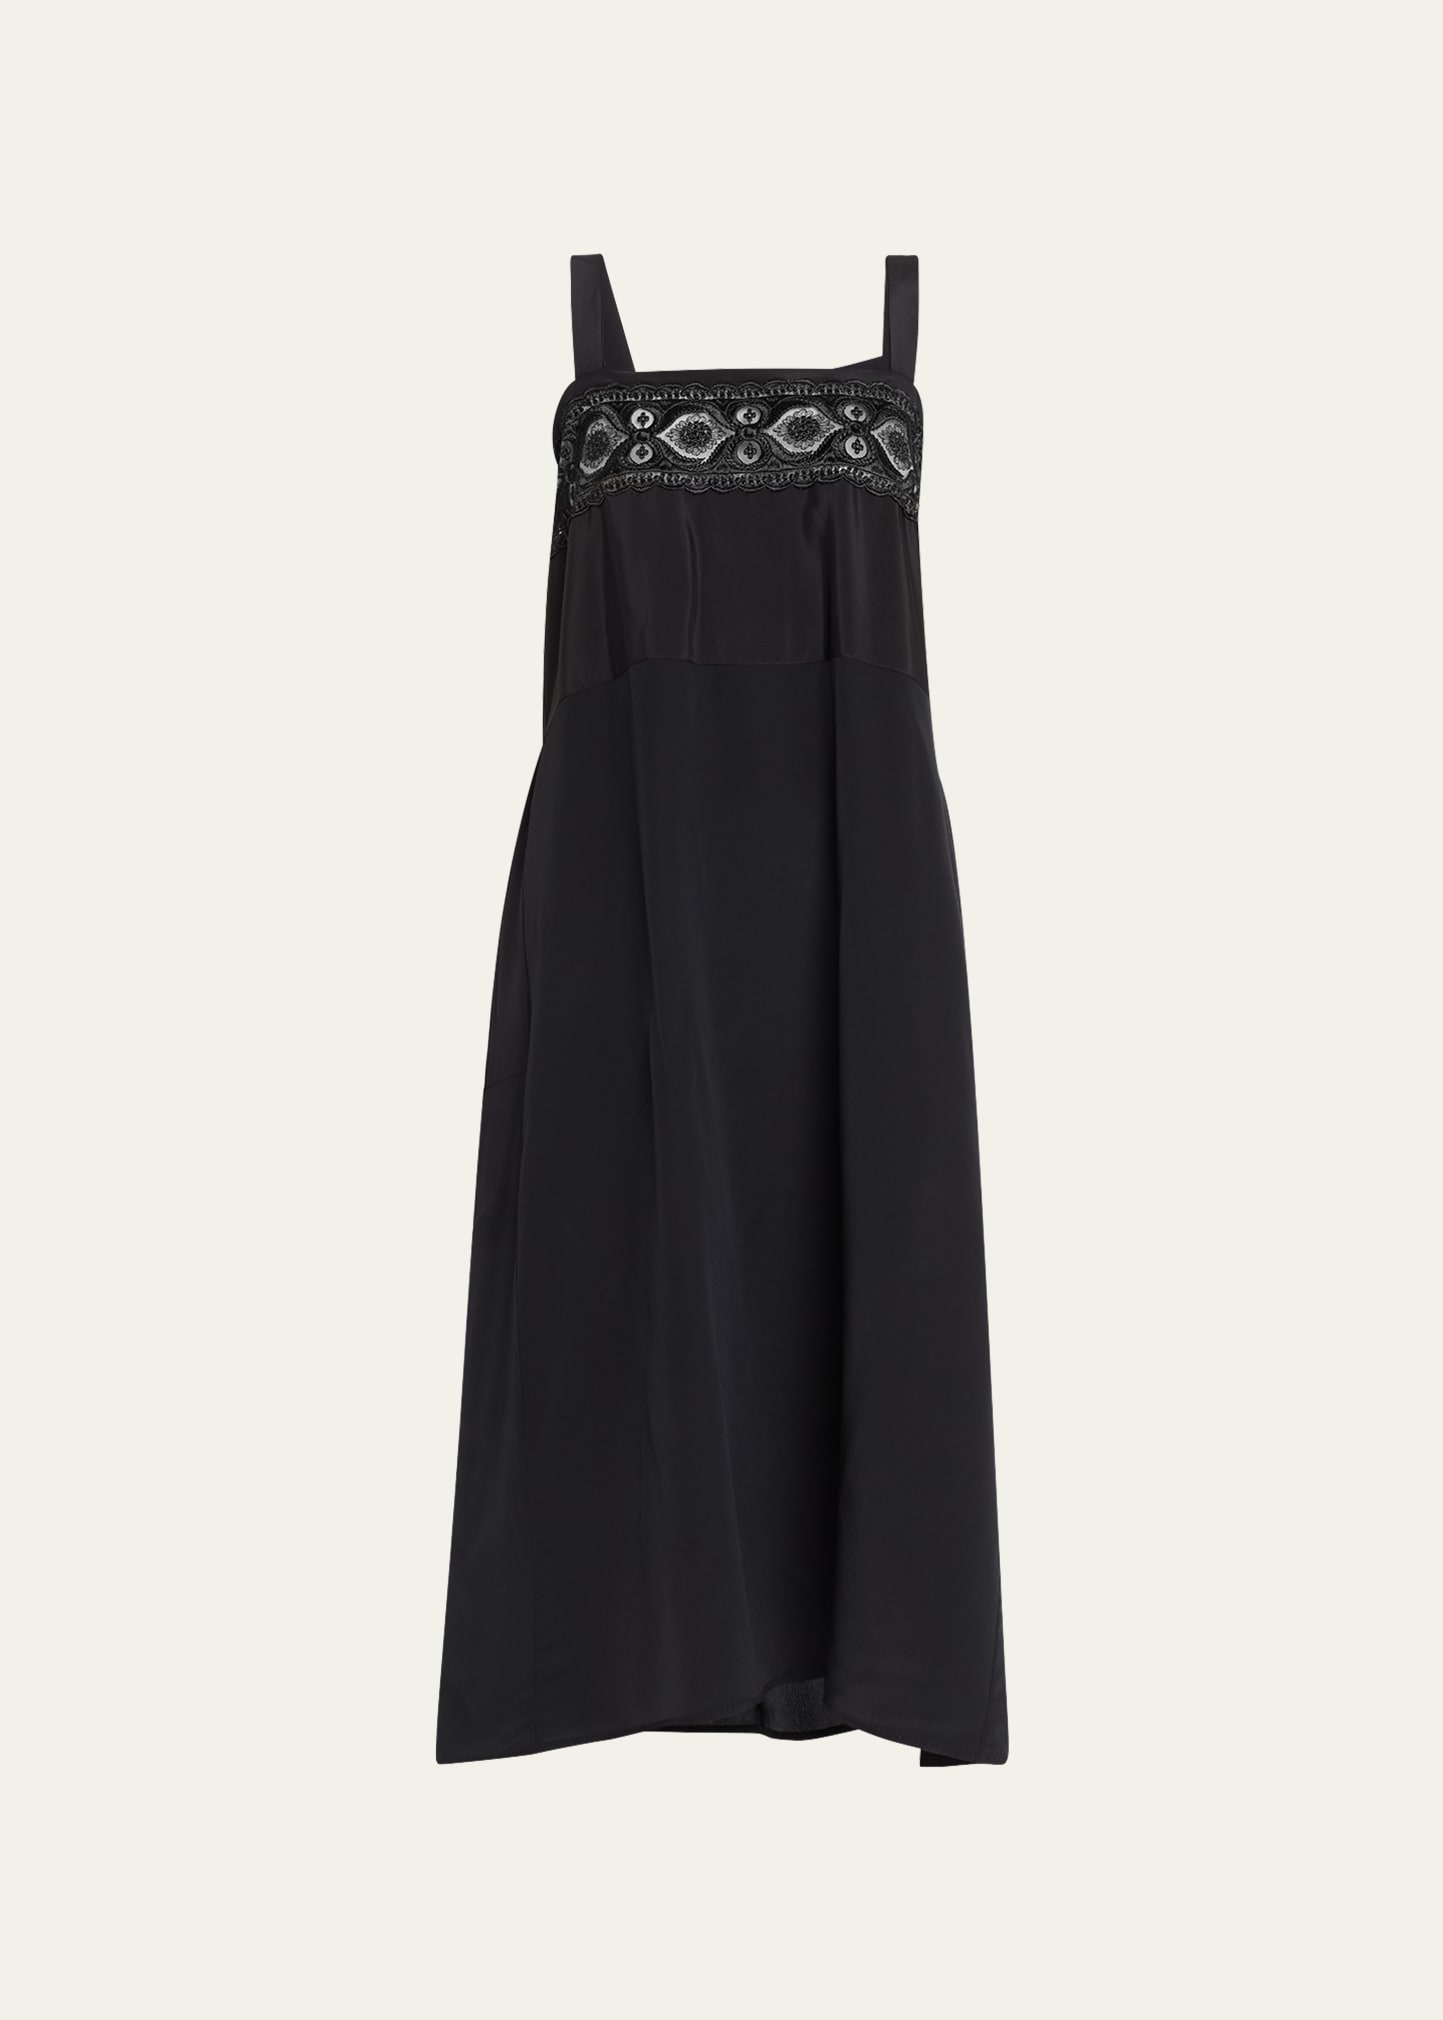 MAISON MARGIELA Midi Dresses for Women | ModeSens